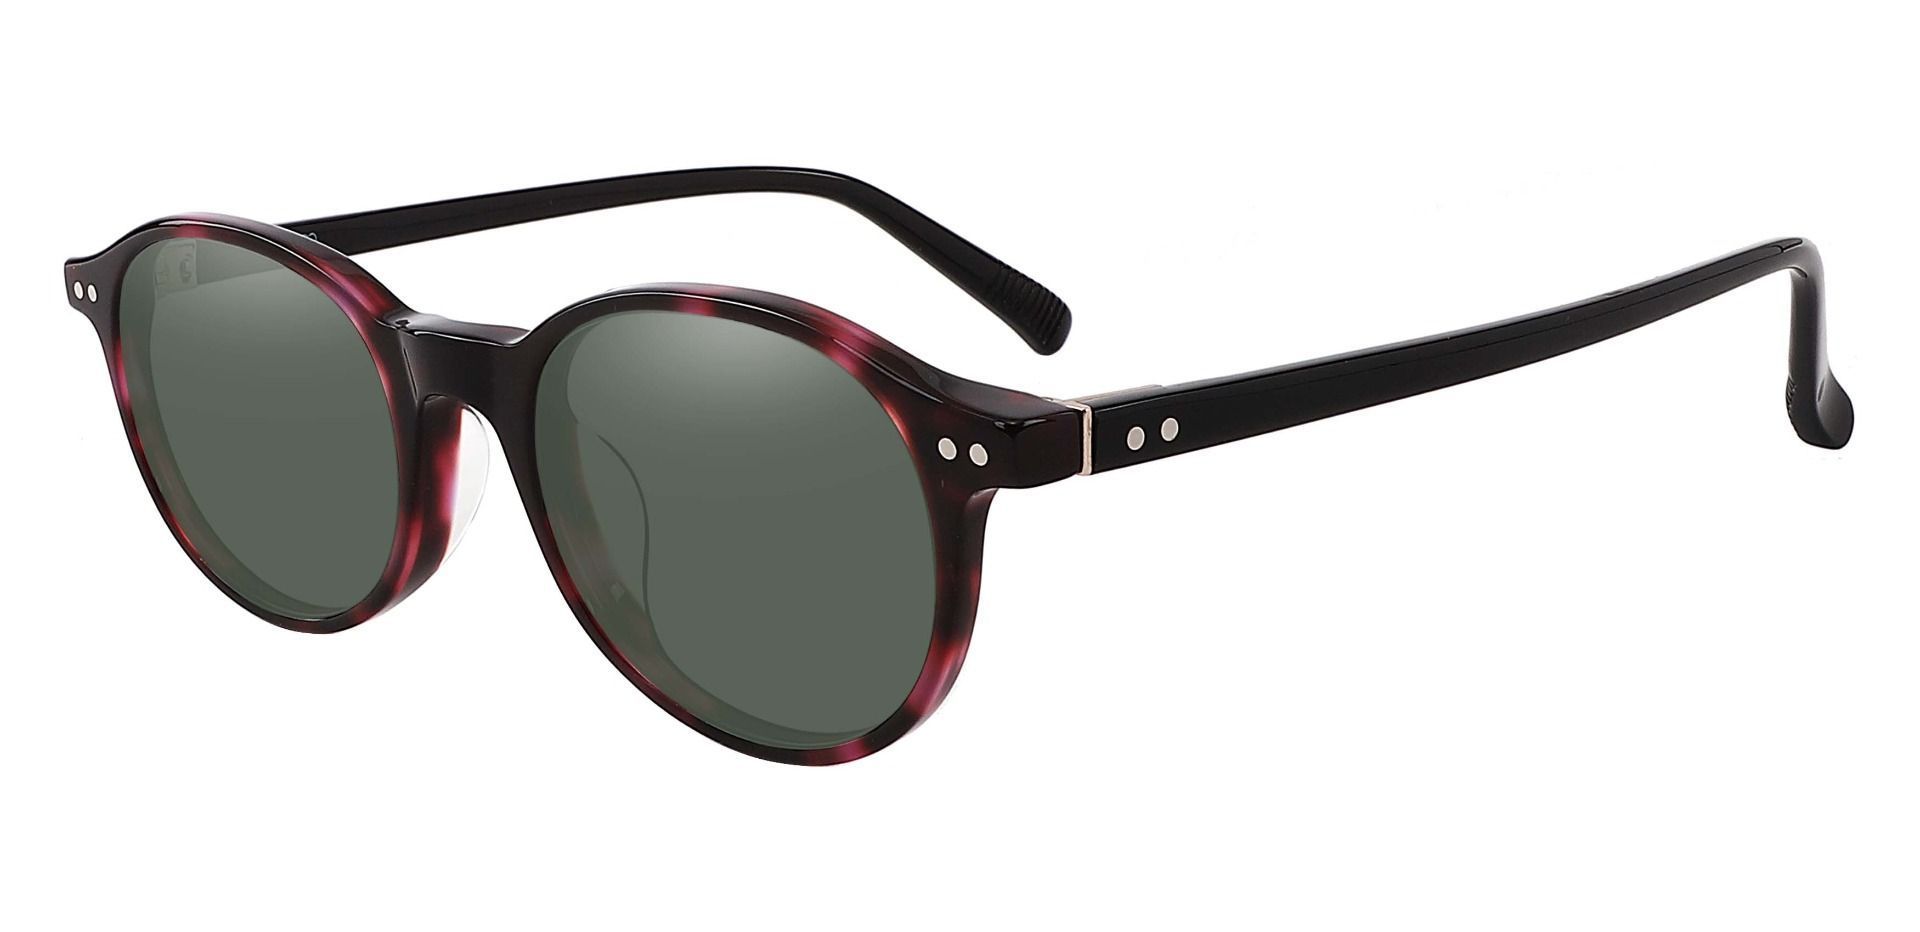 Avon Oval Prescription Sunglasses - Tortoise Frame With Green Lenses